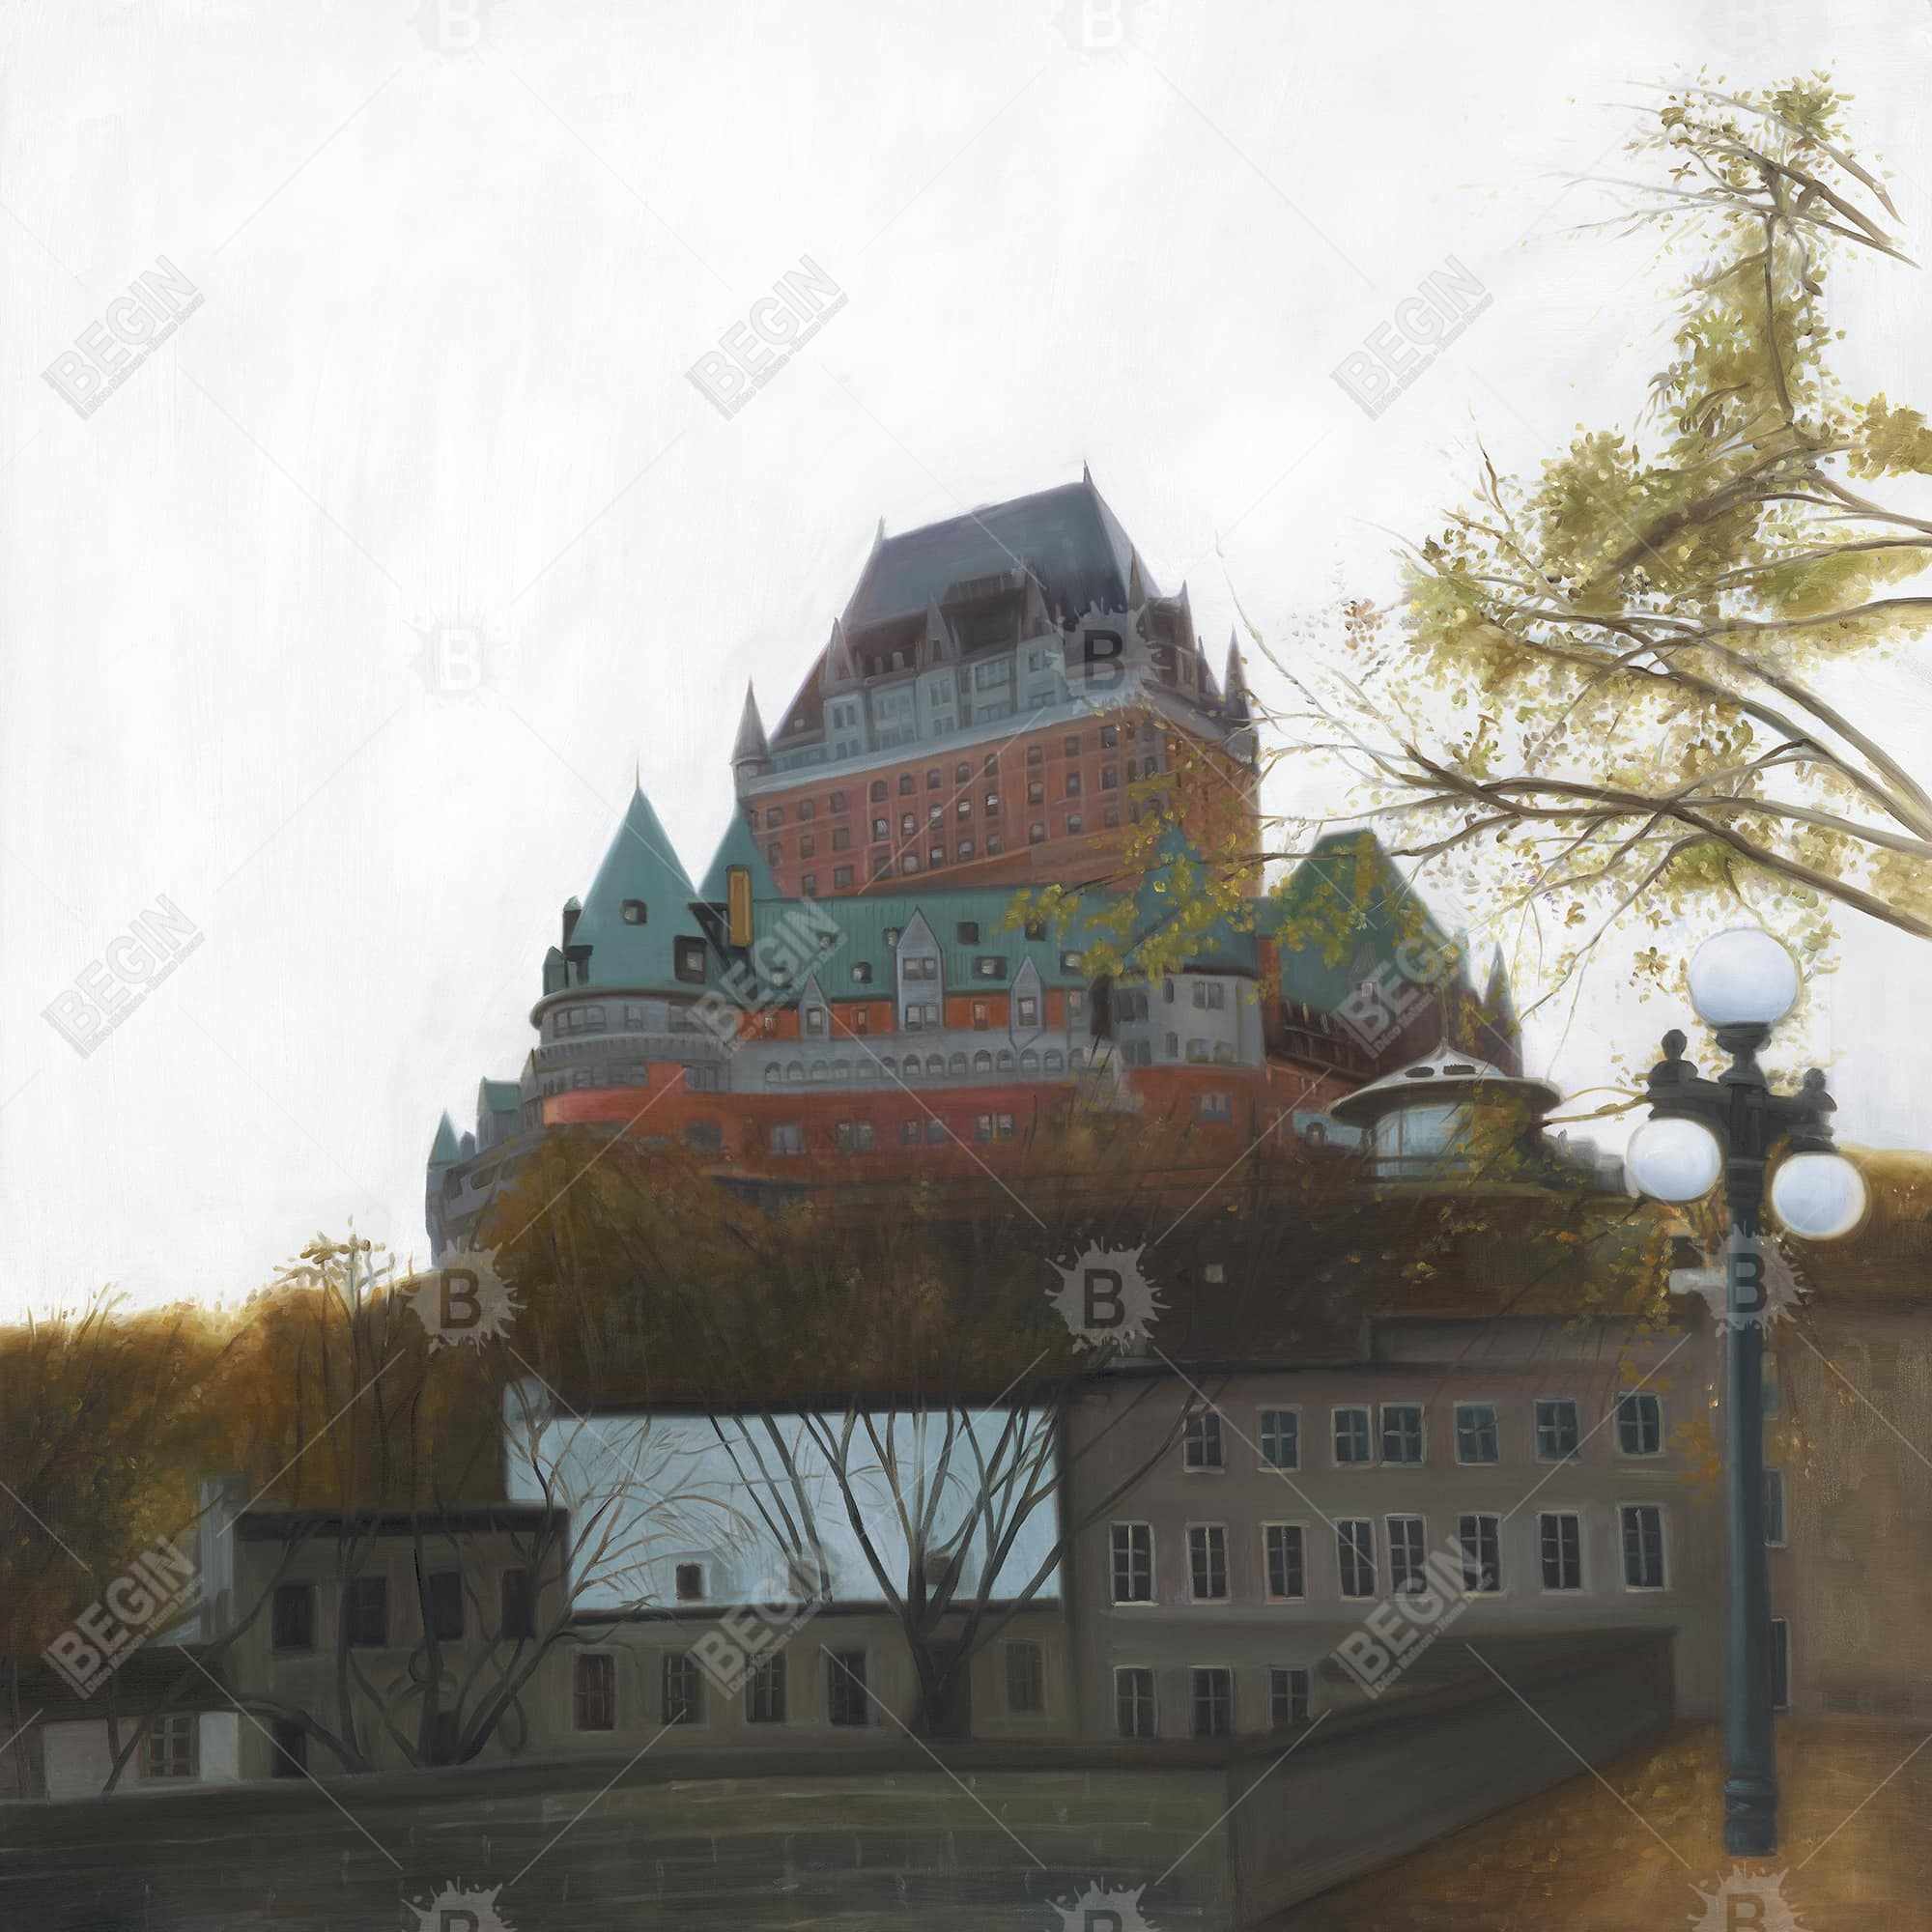 Le château de frontenac in autumn